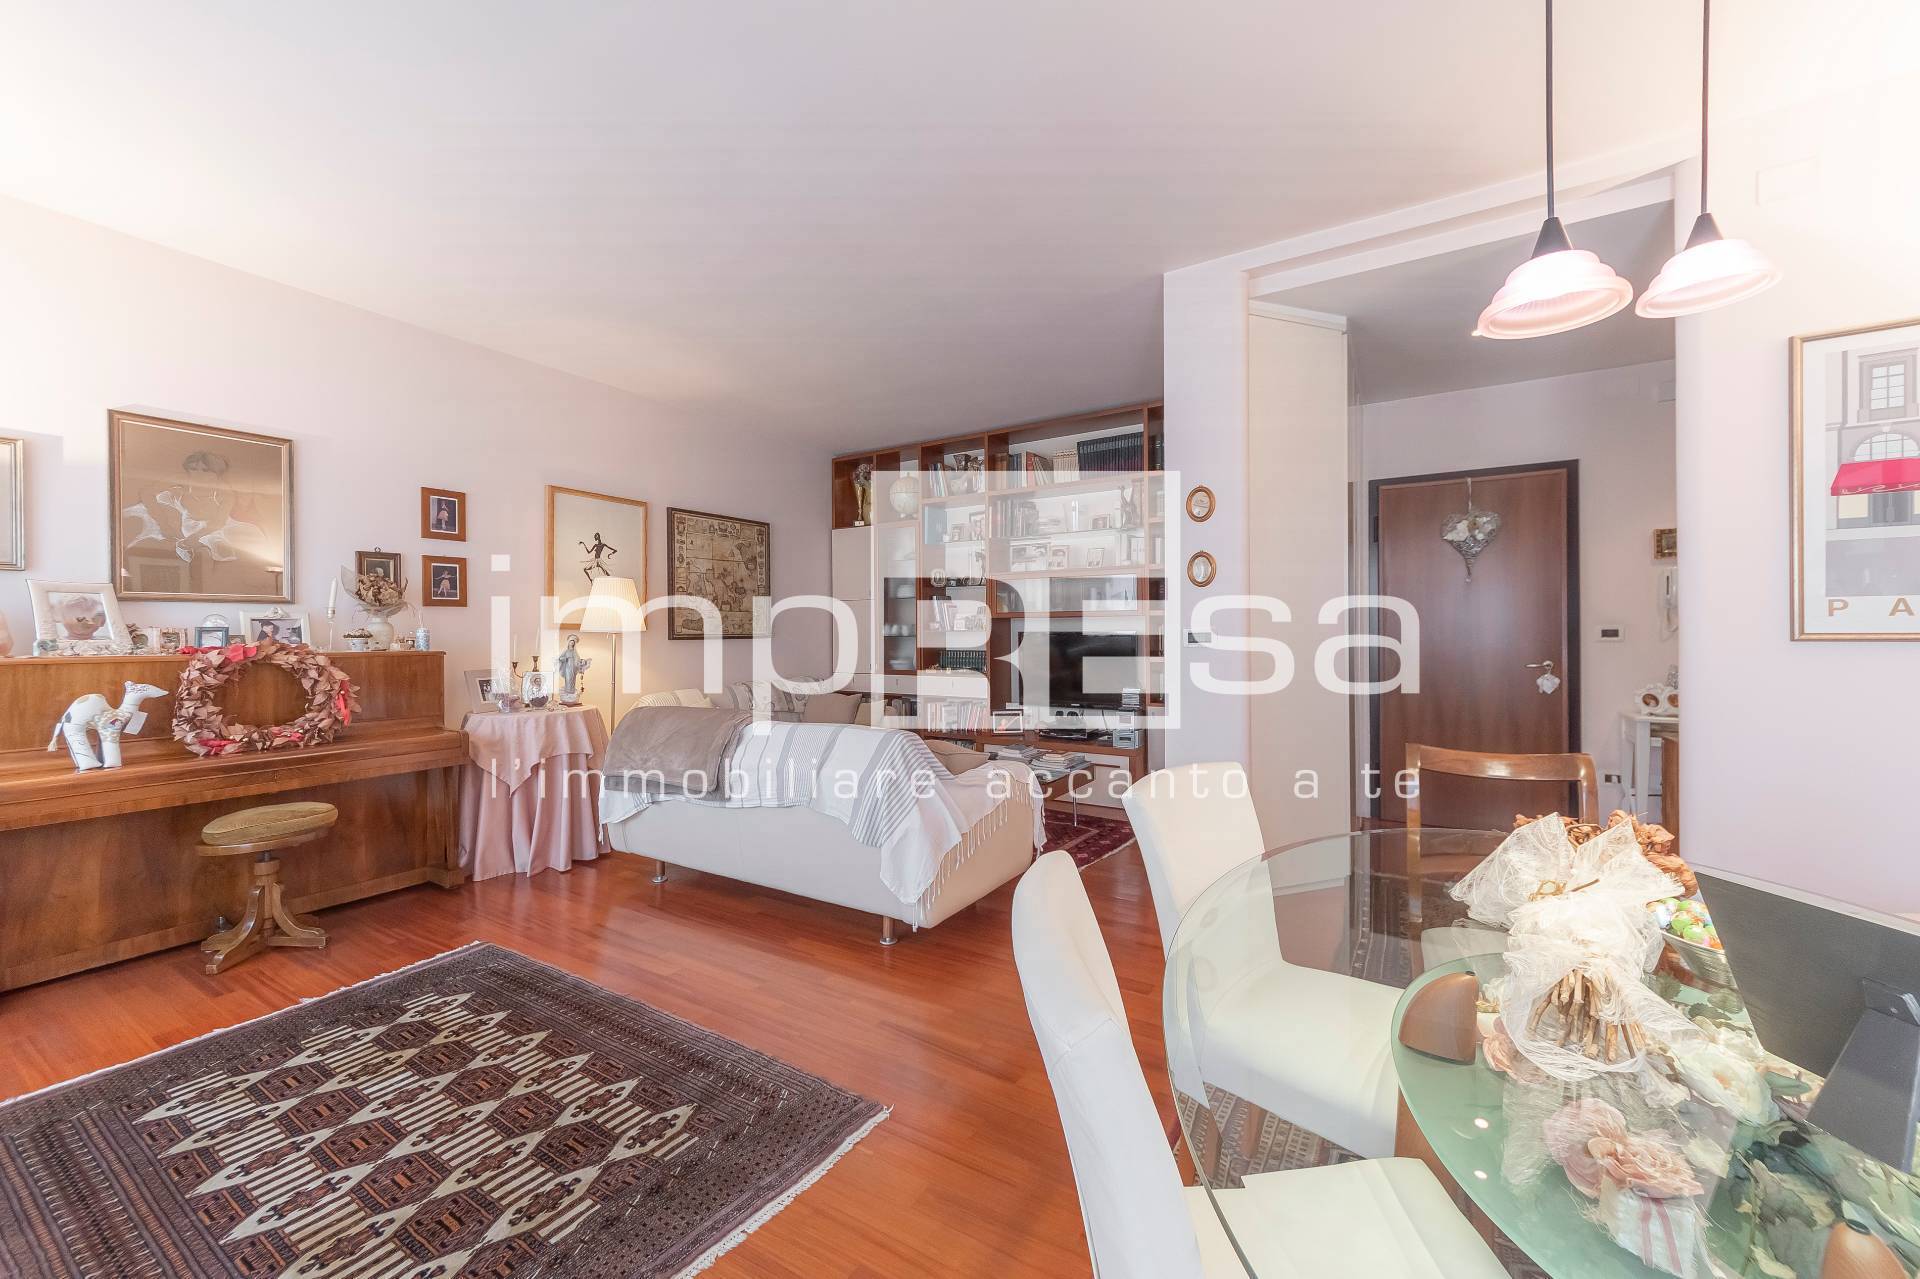 Appartamento in vendita a Spinea, 6 locali, prezzo € 210.000 | PortaleAgenzieImmobiliari.it